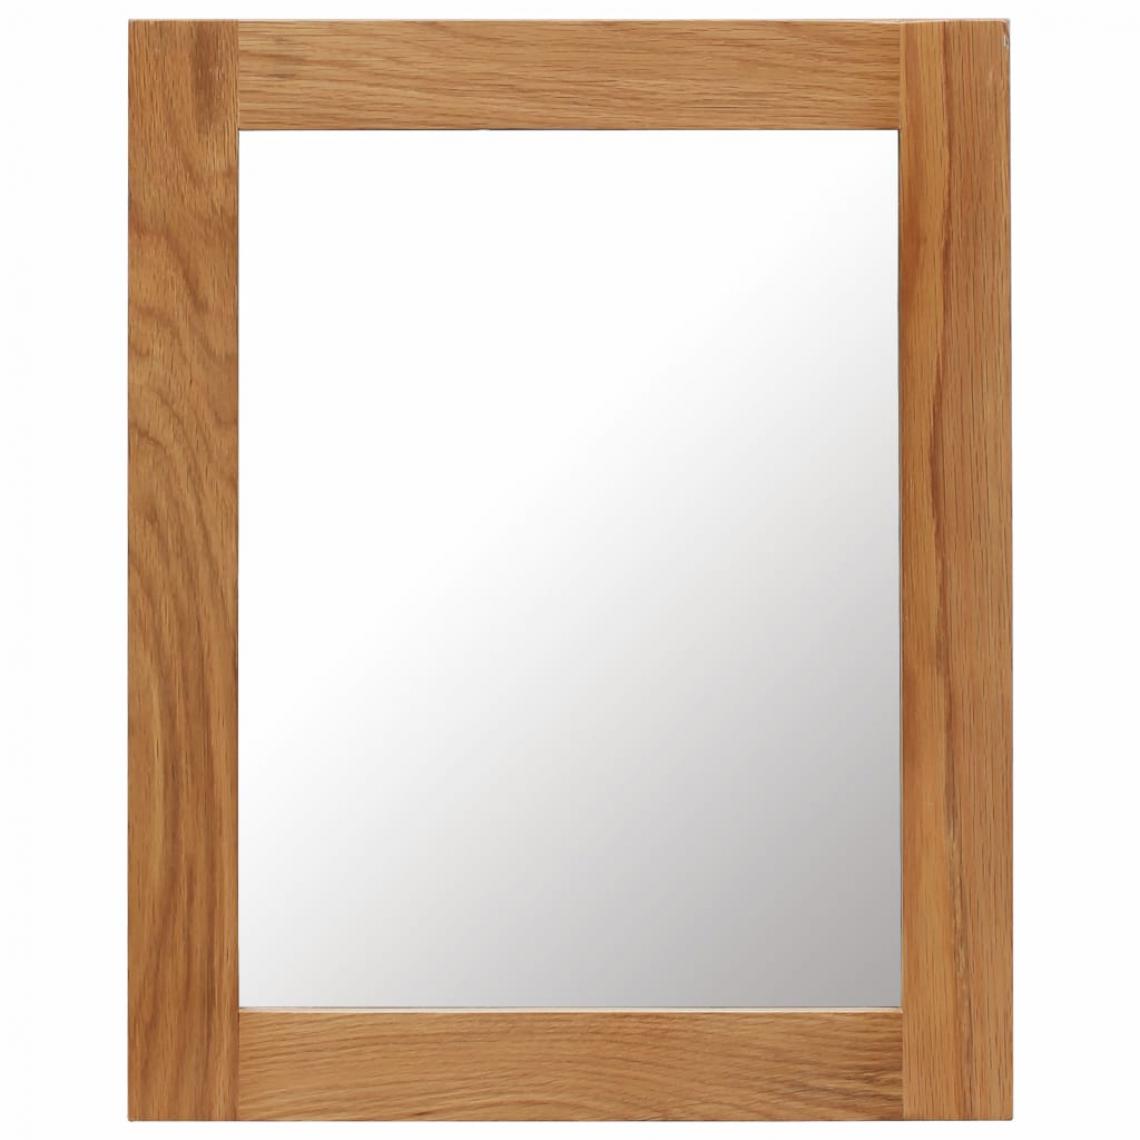 Icaverne - Contemporain Décorations categorie Nicosie Miroir 40 x 50 cm Bois de chêne massif - Miroir de salle de bain